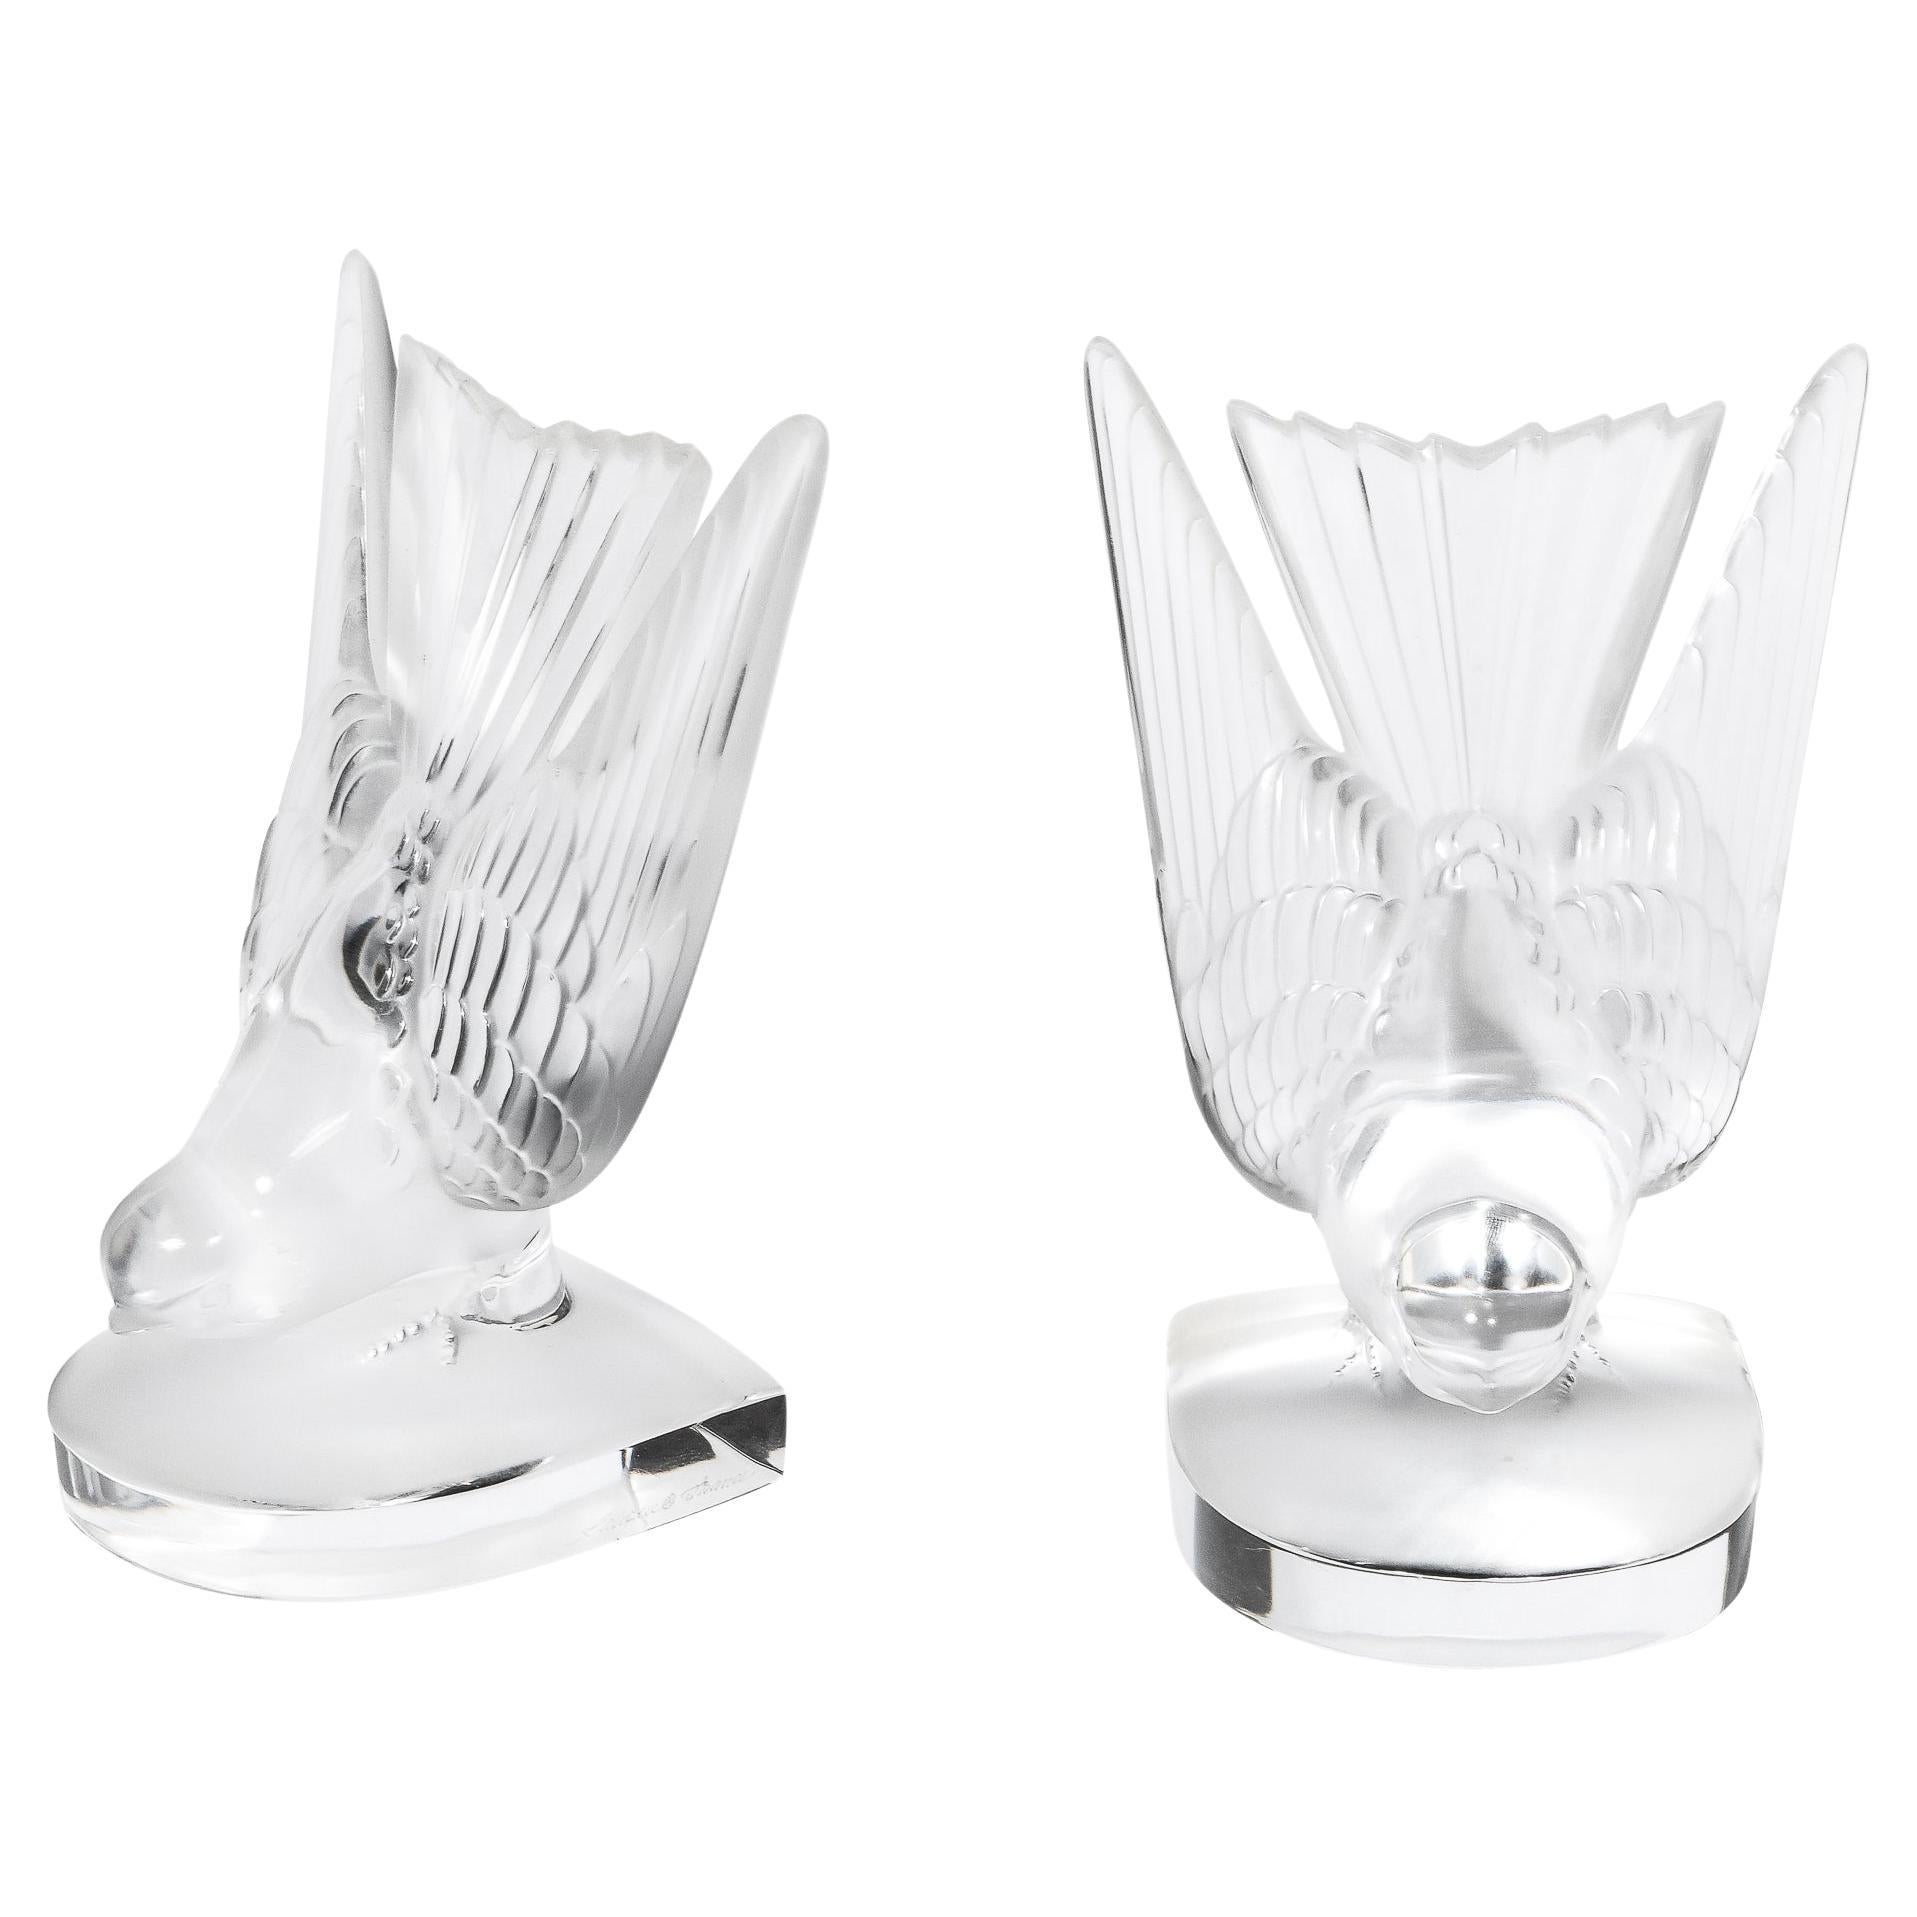 Serre-livres « Swallow » de style Art déco en cristal moulé et dépoli signé Lalique